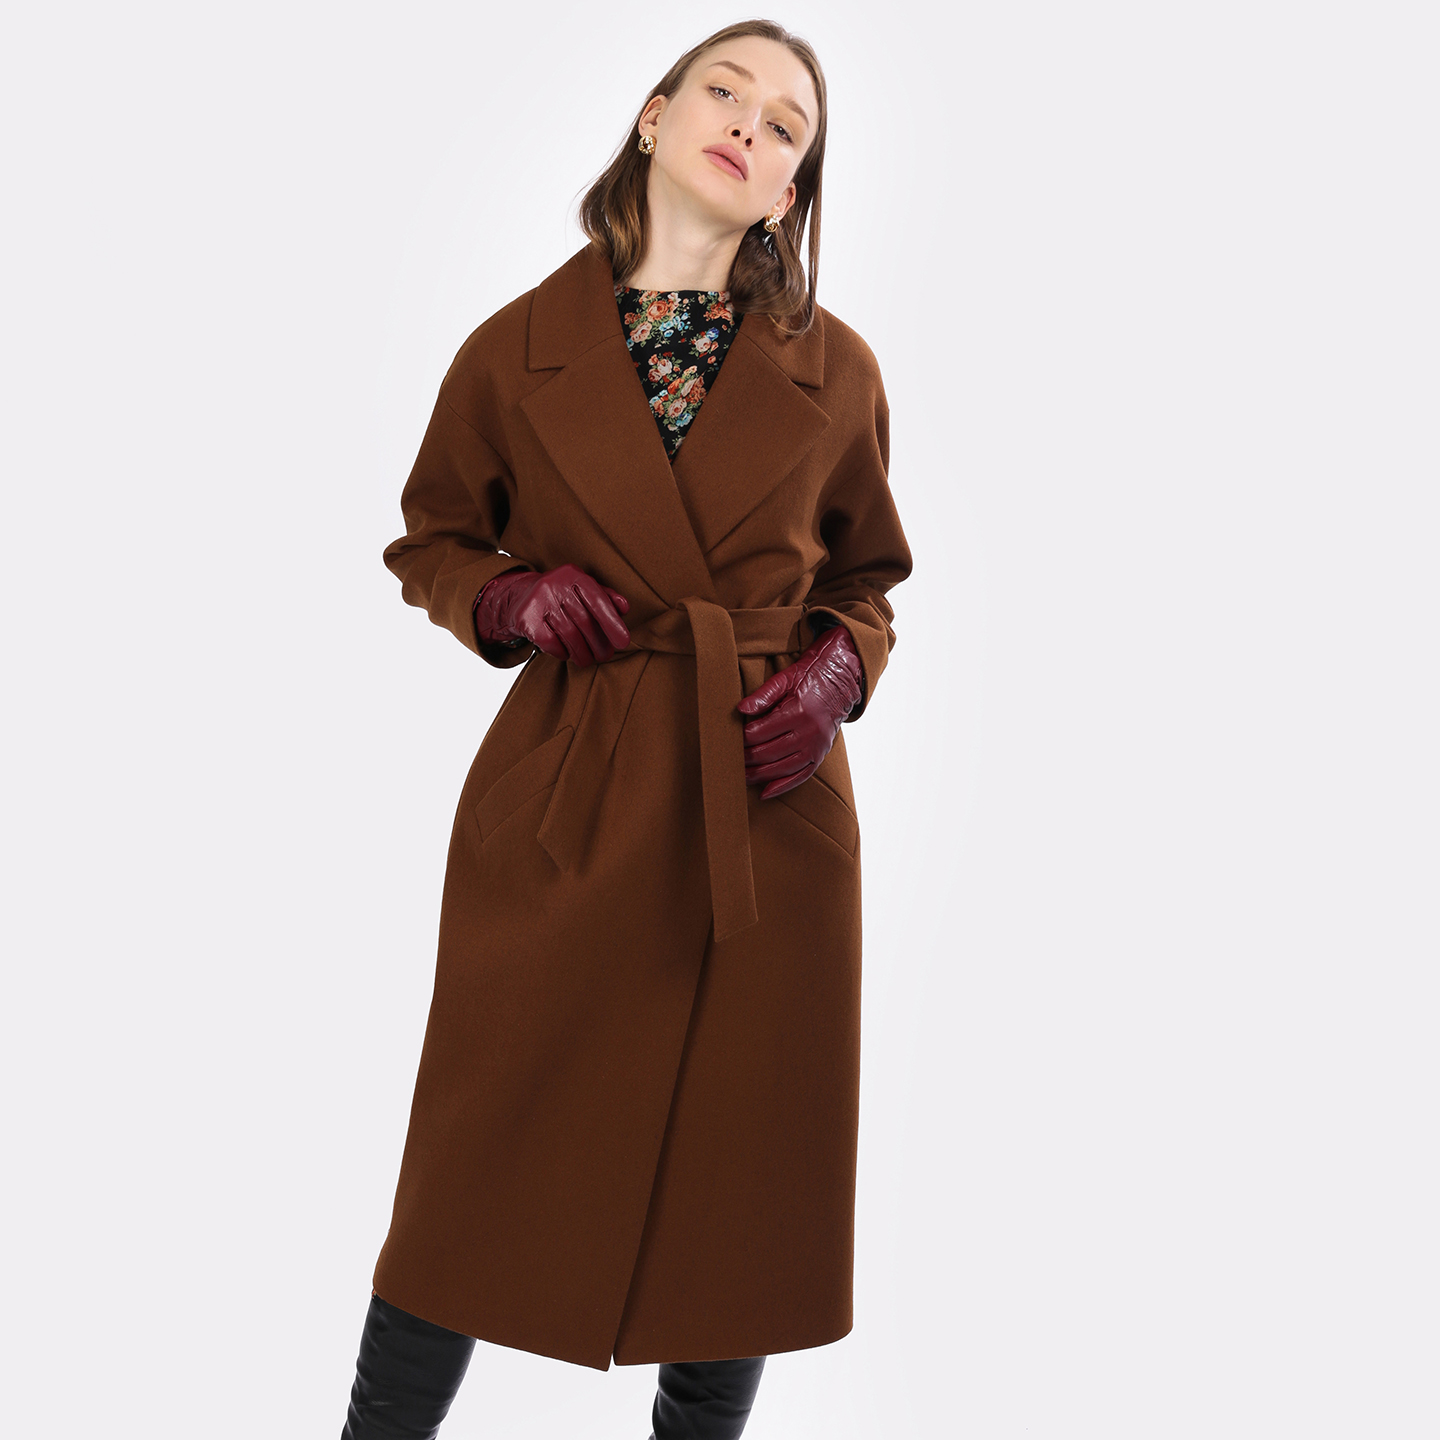 Купить коричневое пальто. Коричневое пальто. Коричневое пальто женское. Пальто халат коричневое. Старое коричневое пальто.